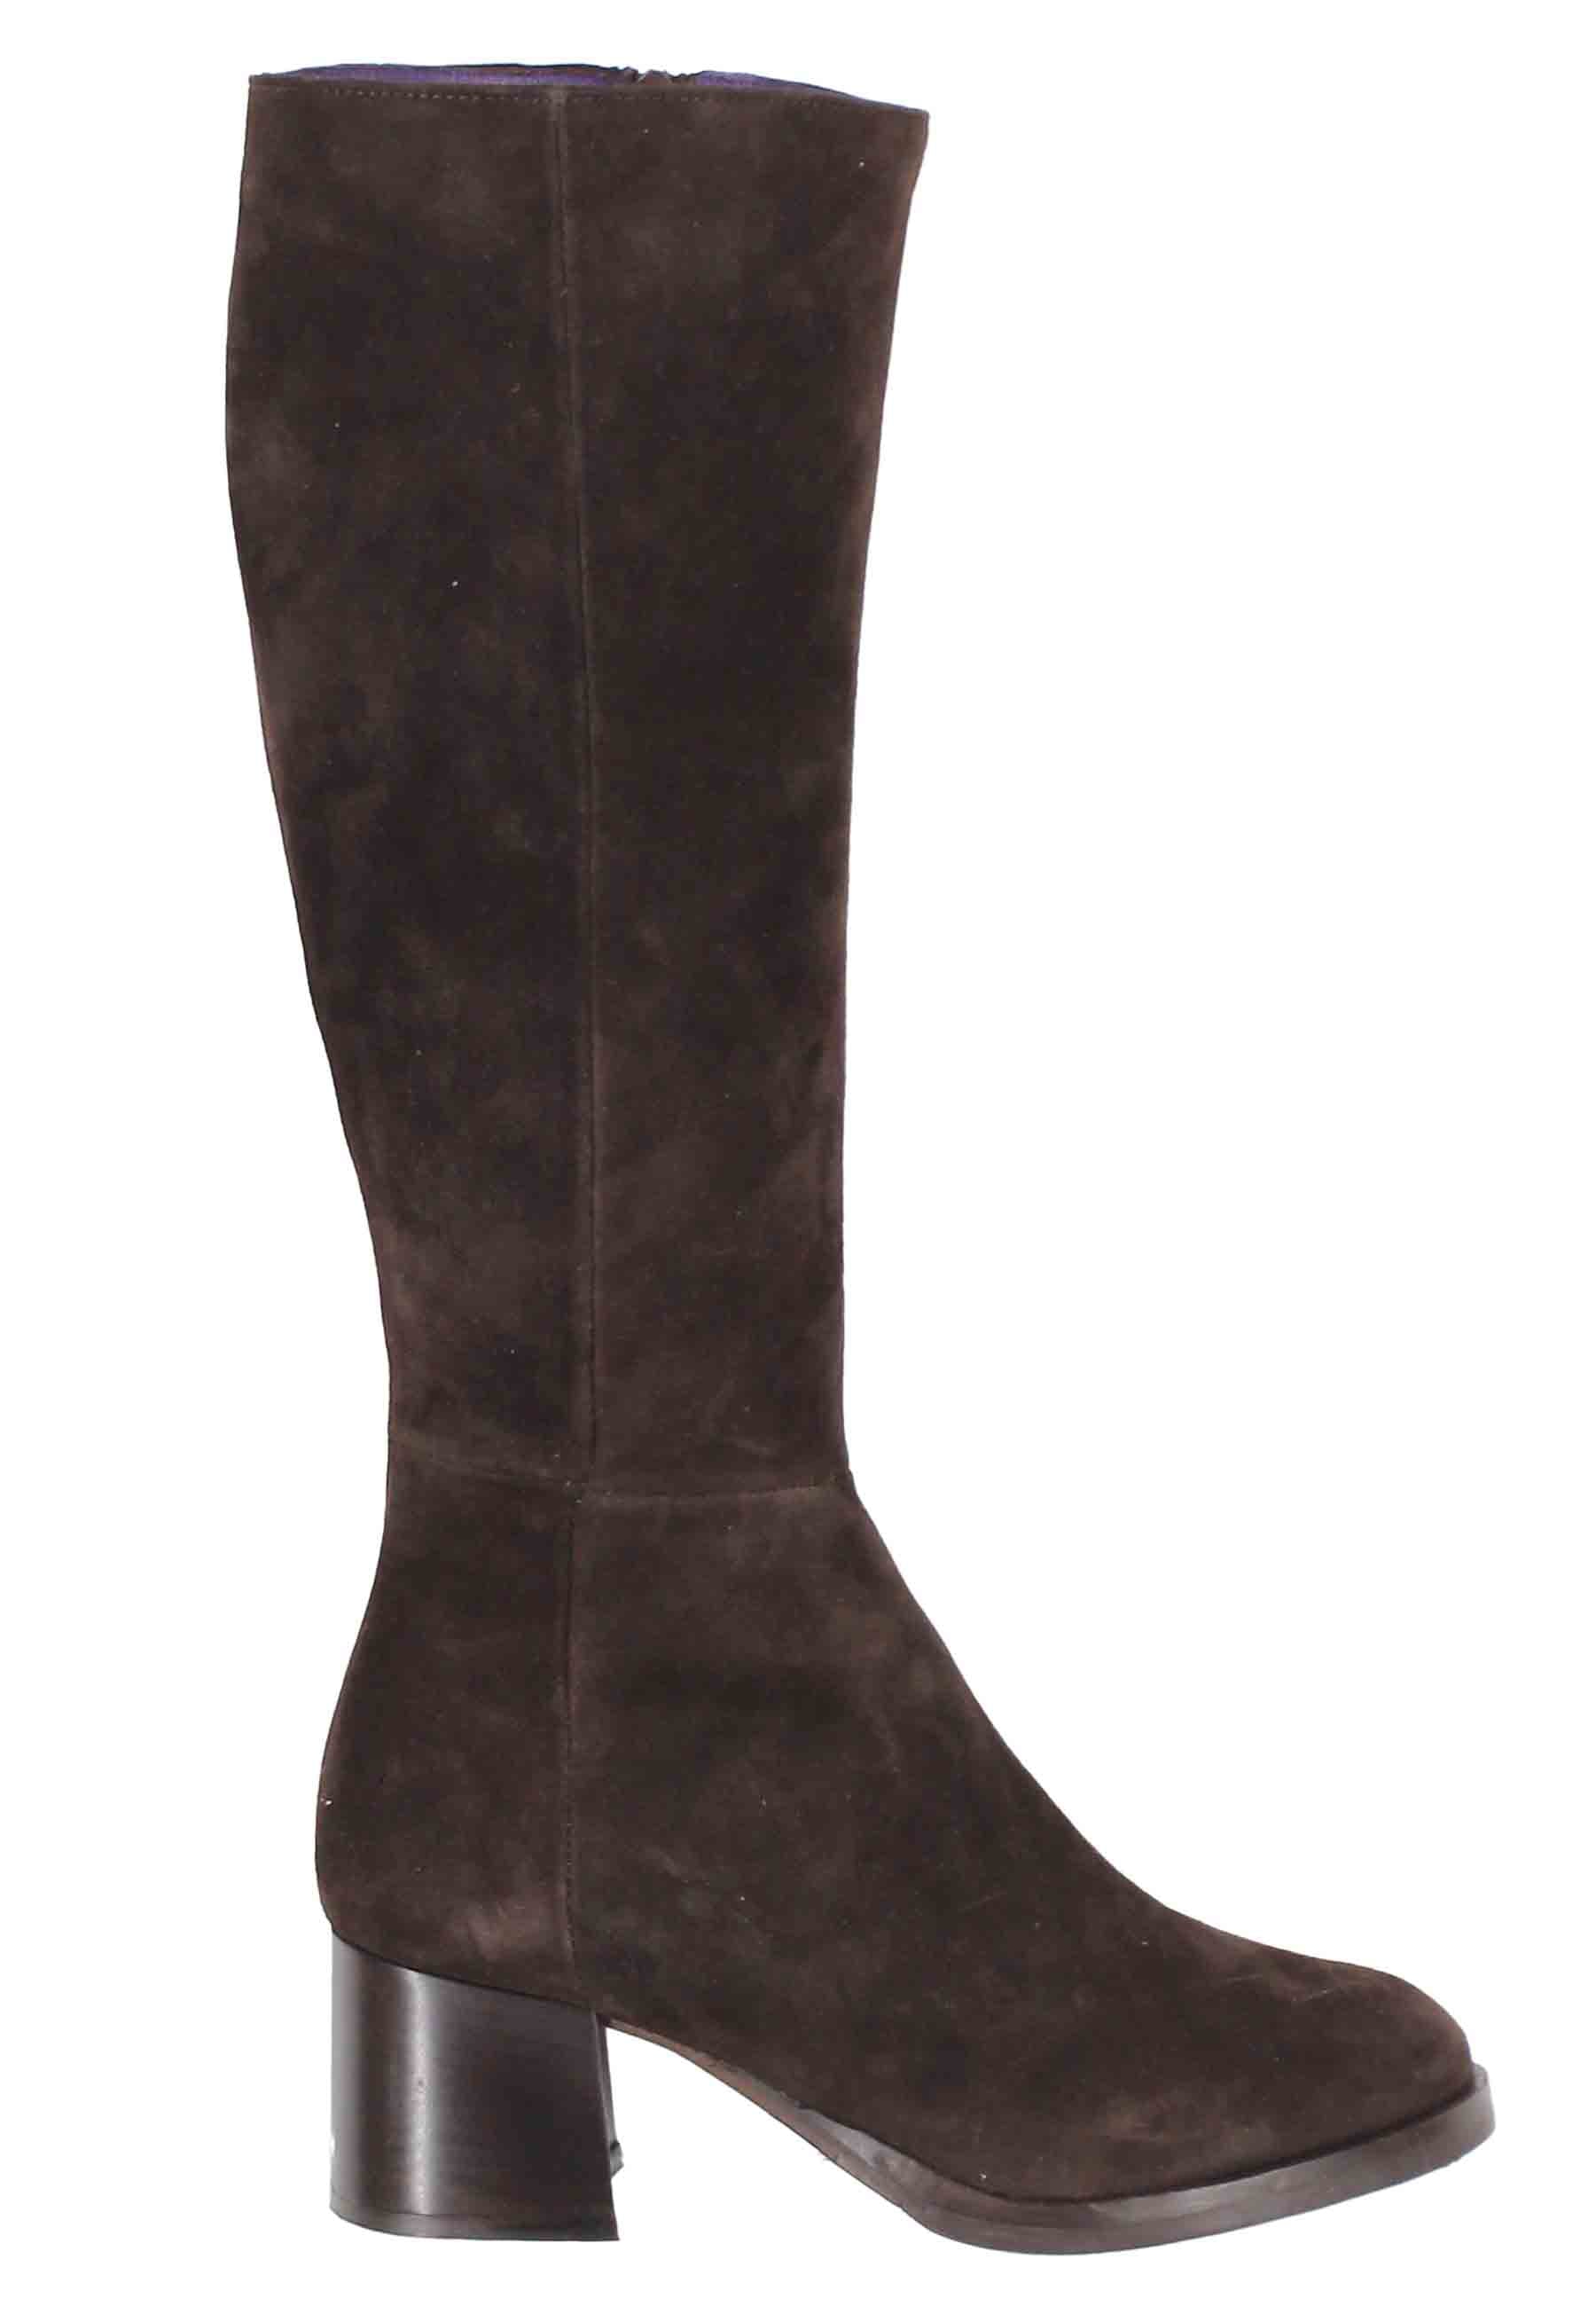 Women's boots in dark brown suede with low heel